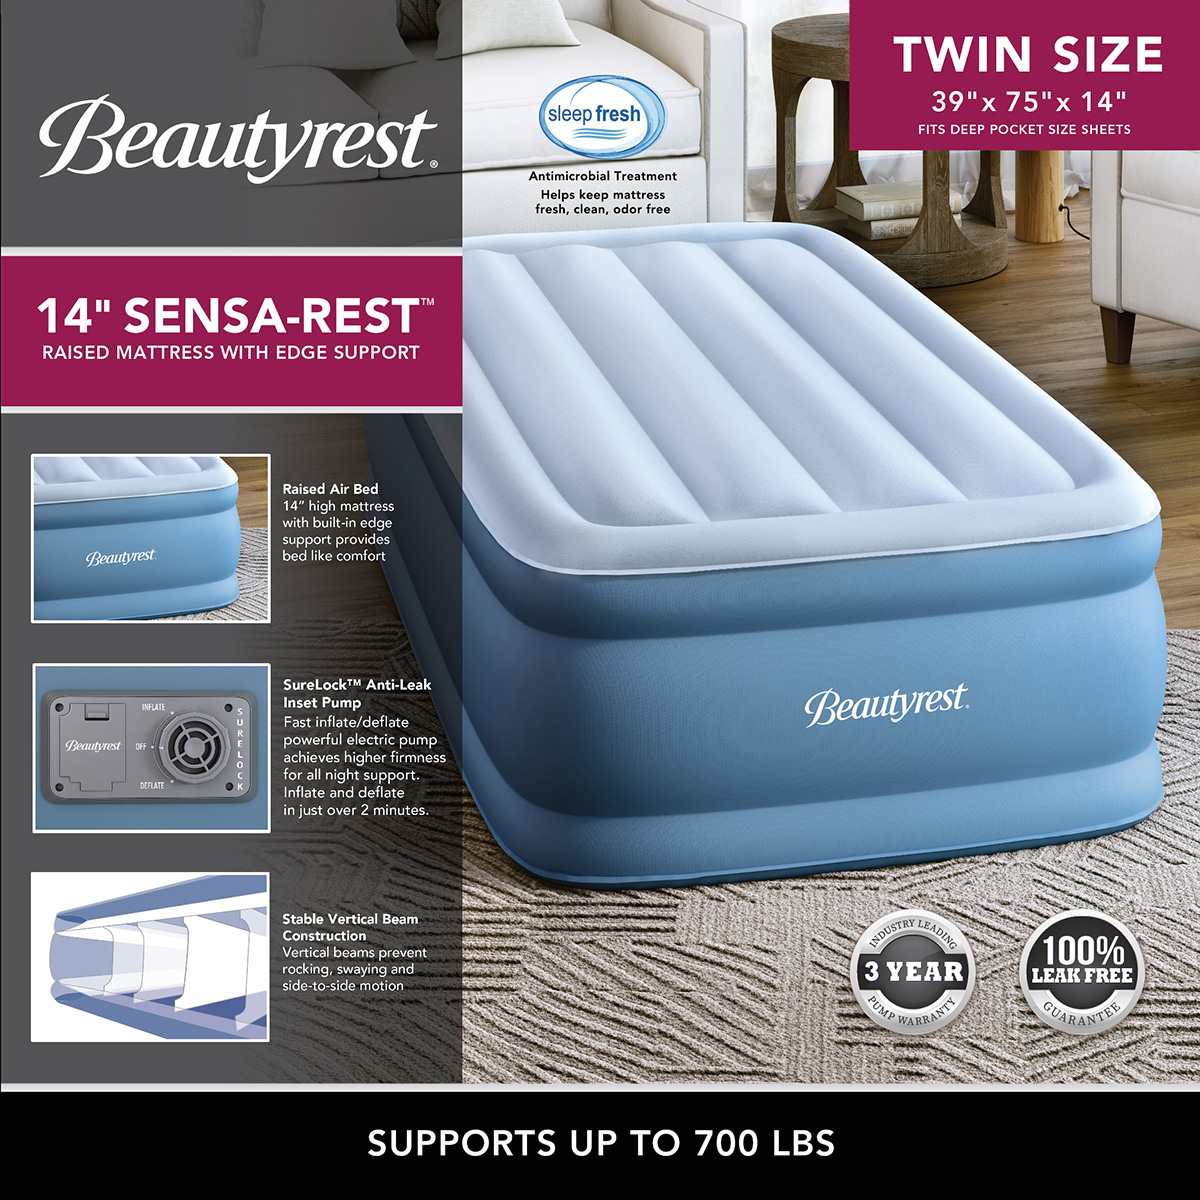 Beautyrest(R) Sensa-Rest(tm) Twin Air Bed Mattress